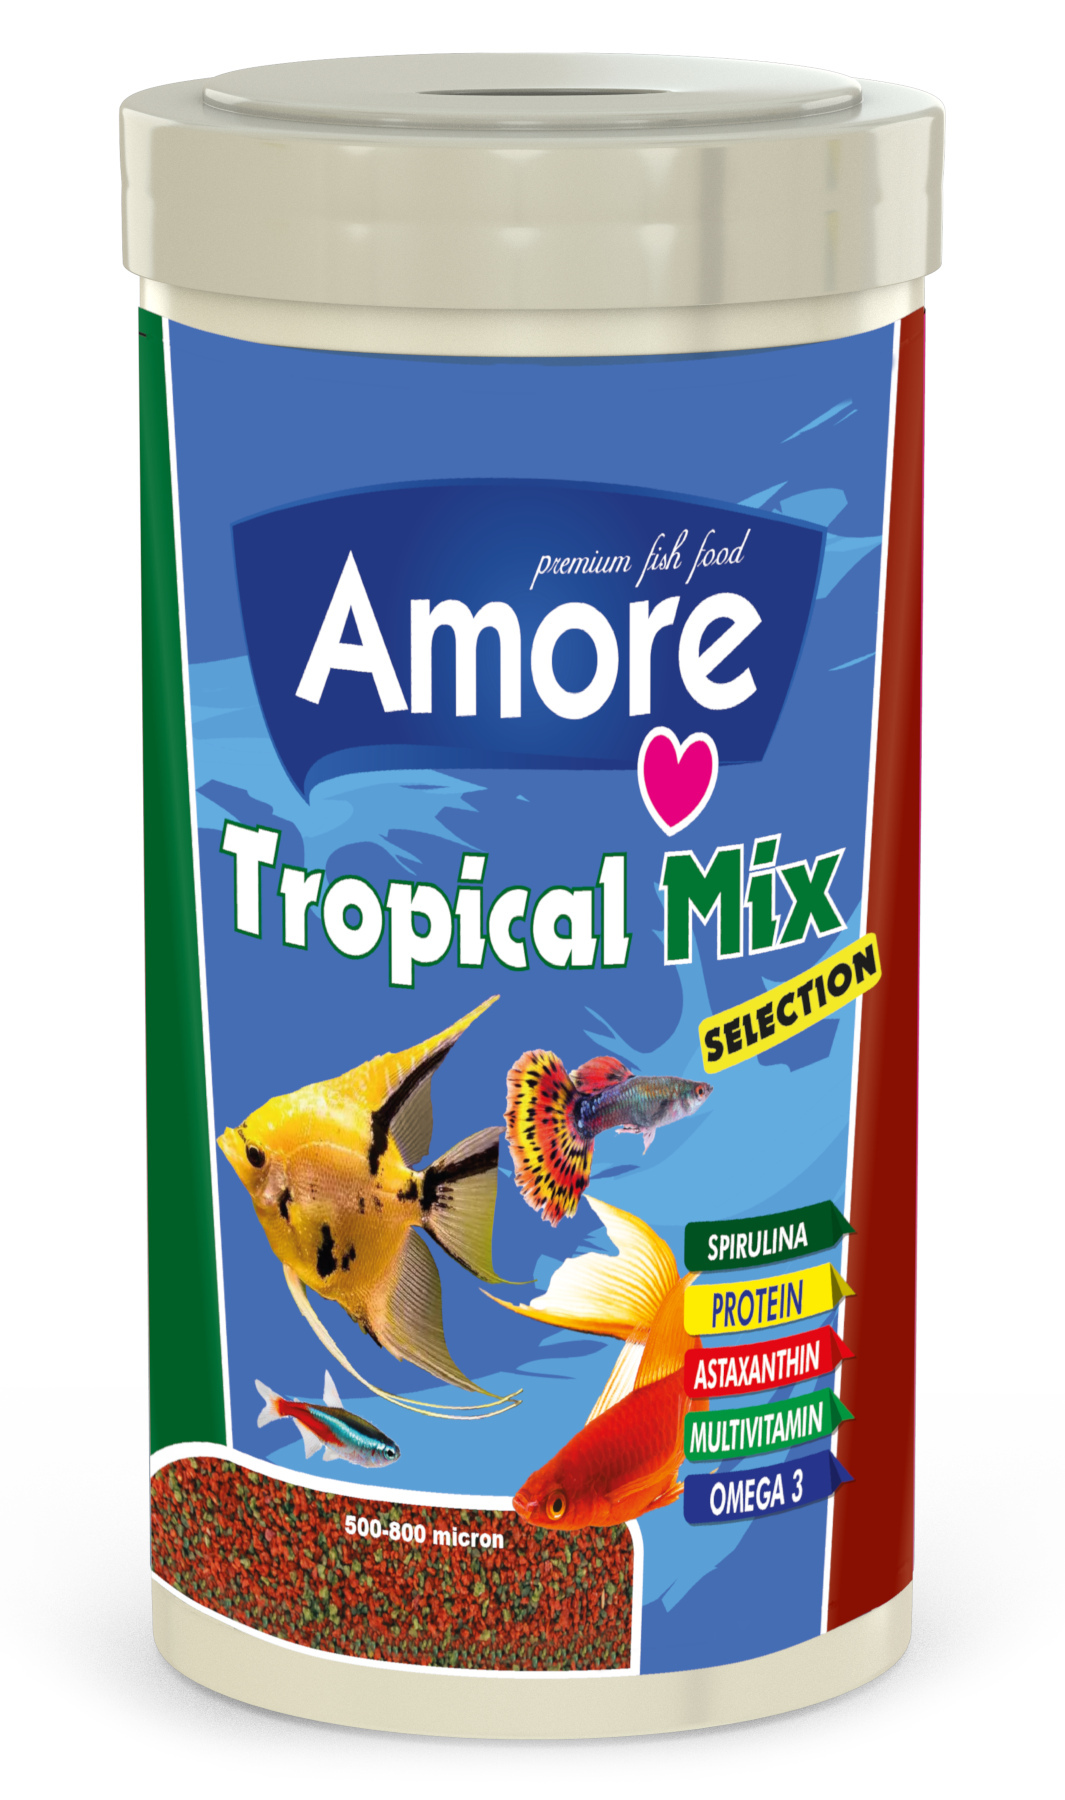 Amore Tropical Mix Lepistes Kılıç Moli Melek Tropikal Balık Yemi ve Vitamini 1000+100 ml Lotus